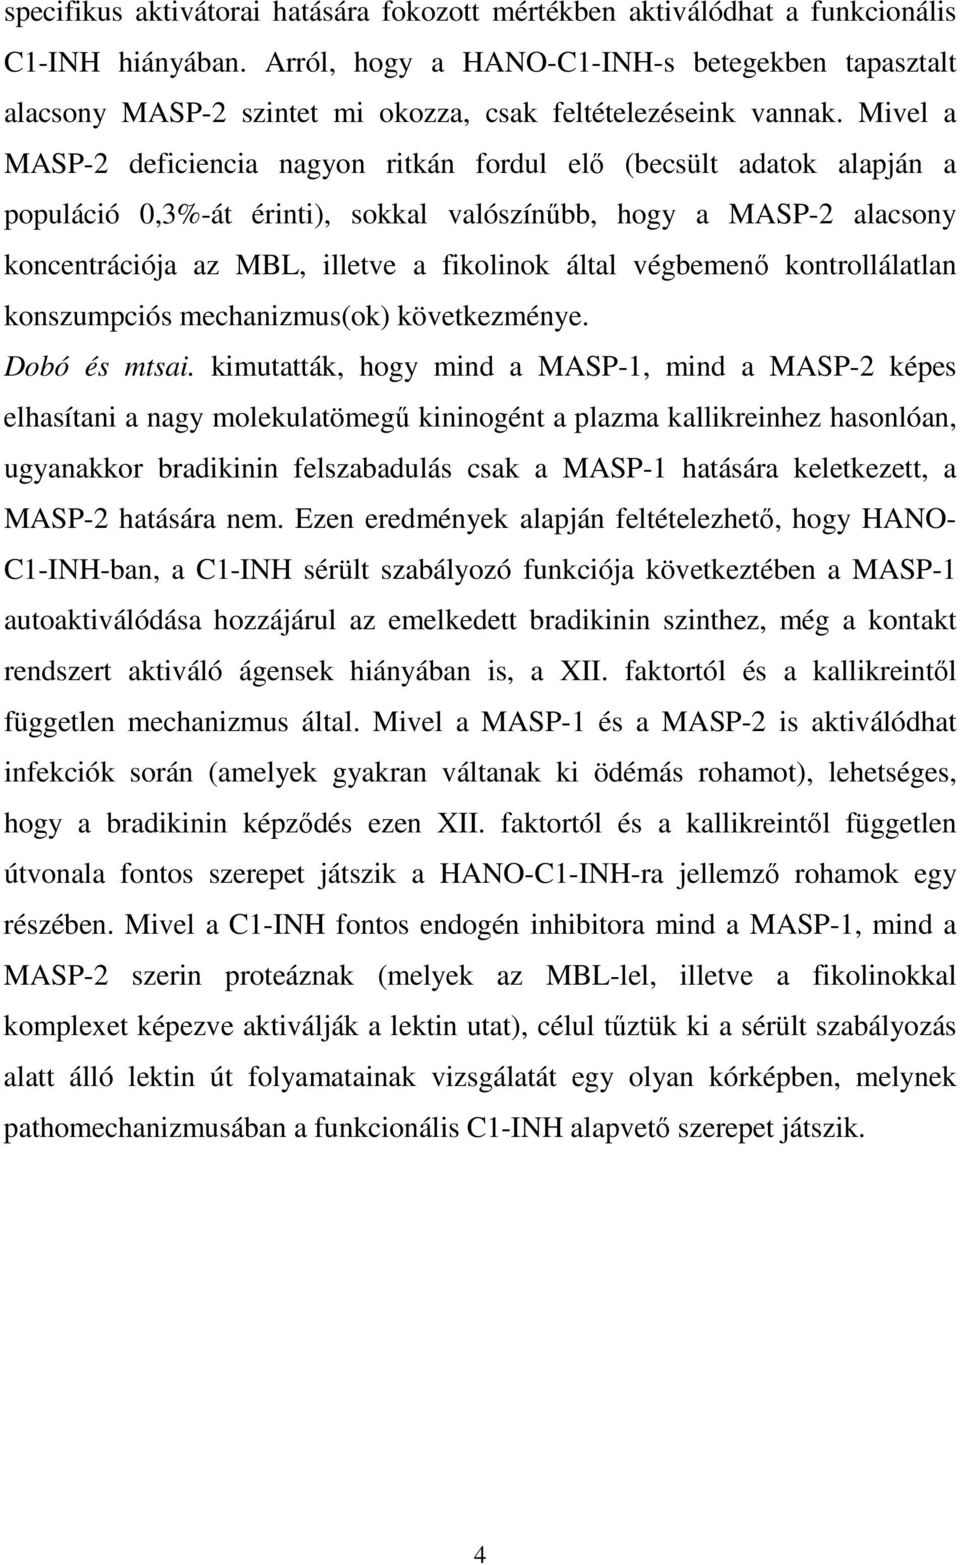 Mivel a MASP-2 deficiencia nagyon ritkán fordul elő (becsült adatok alapján a populáció 0,3%-át érinti), sokkal valószínűbb, hogy a MASP-2 alacsony koncentrációja az MBL, illetve a fikolinok által